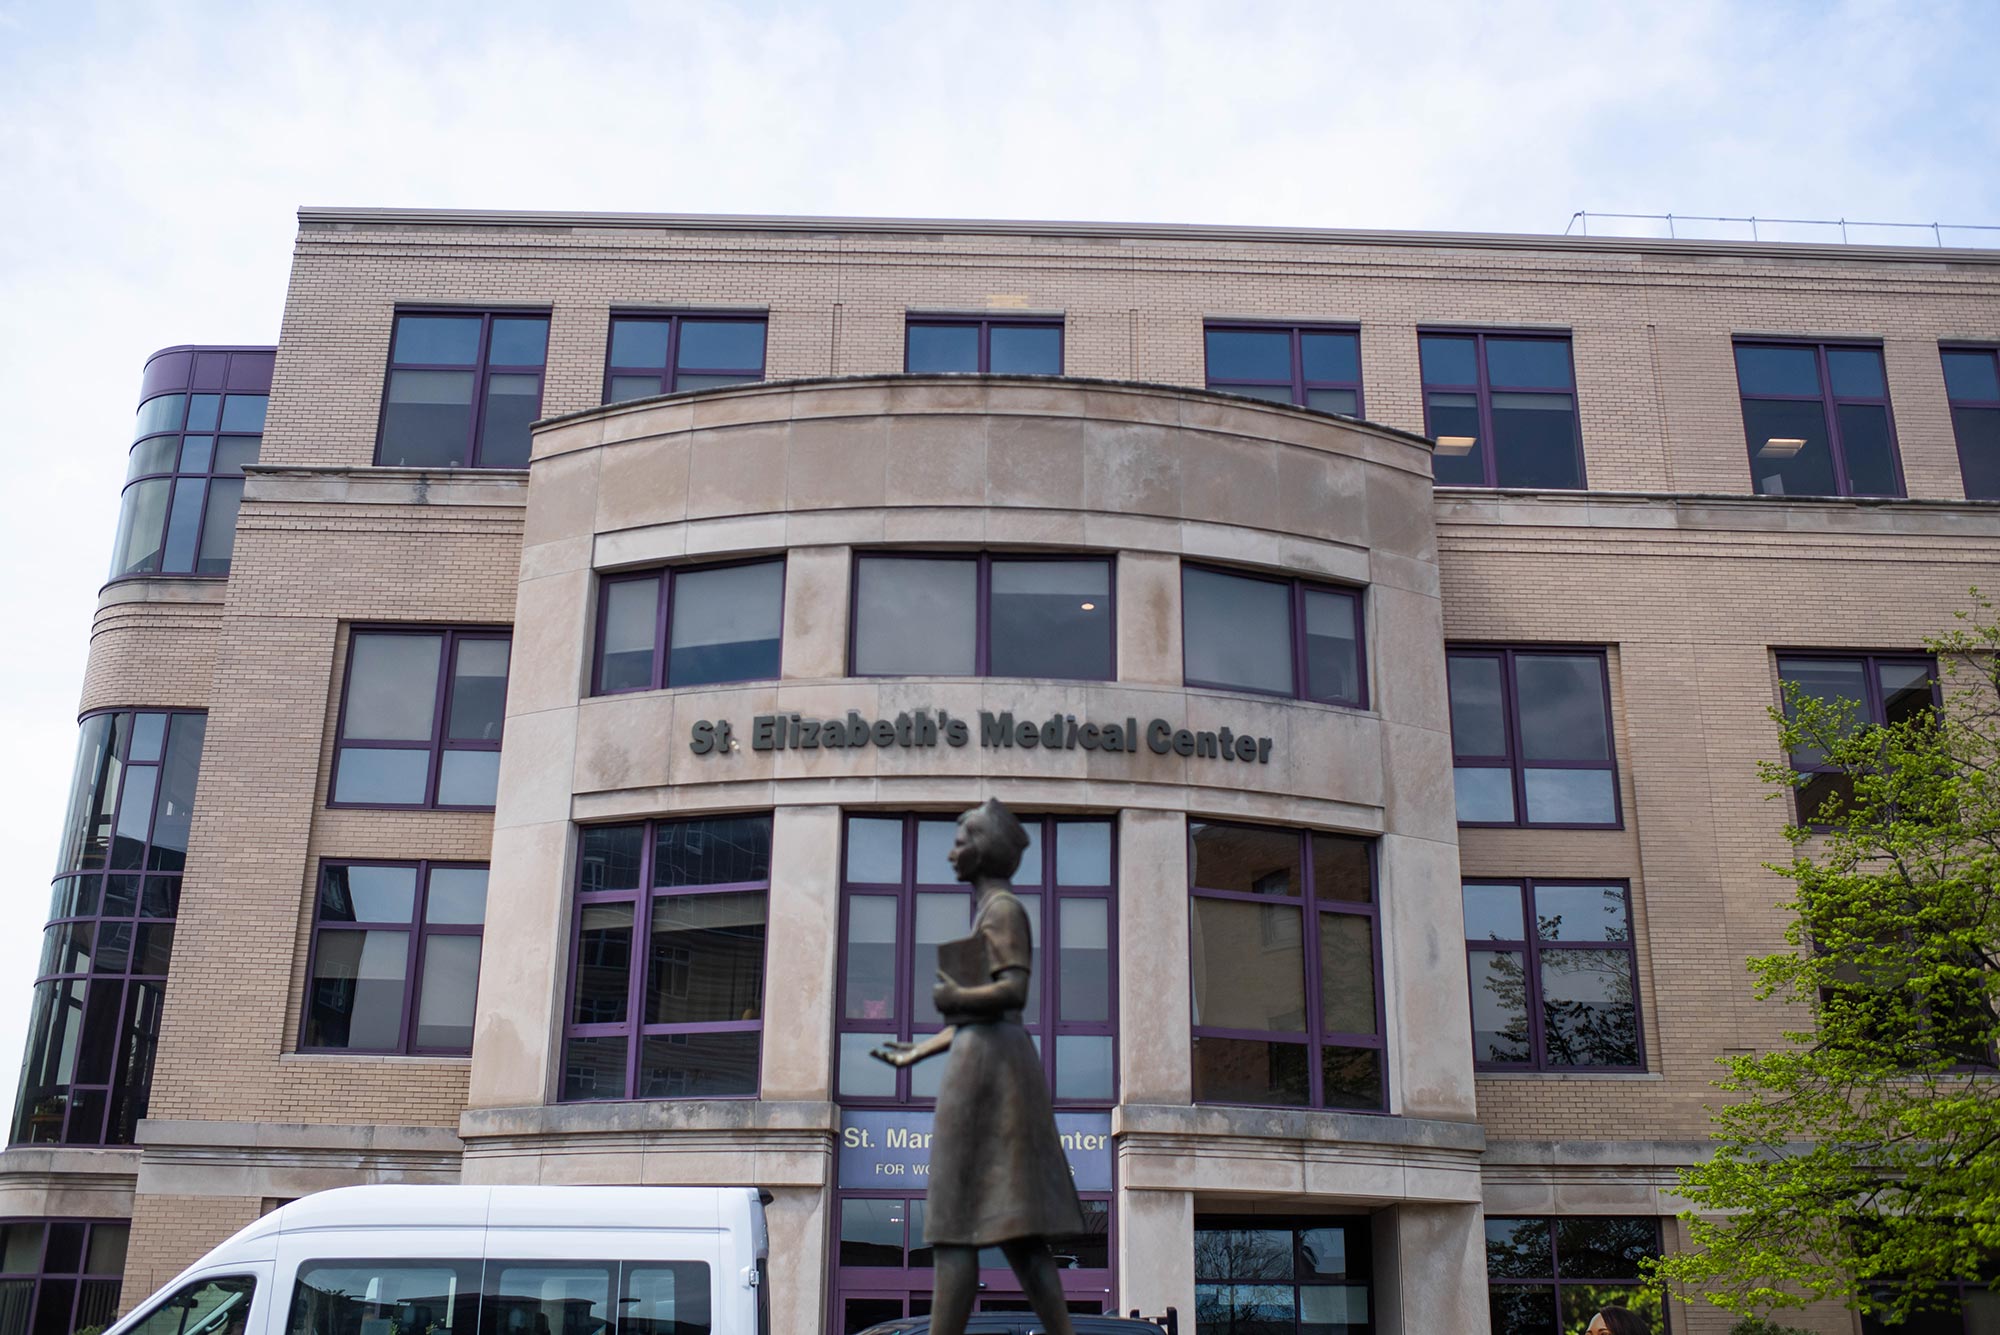 Image of St. Elizabeth's Medical Center entrance.